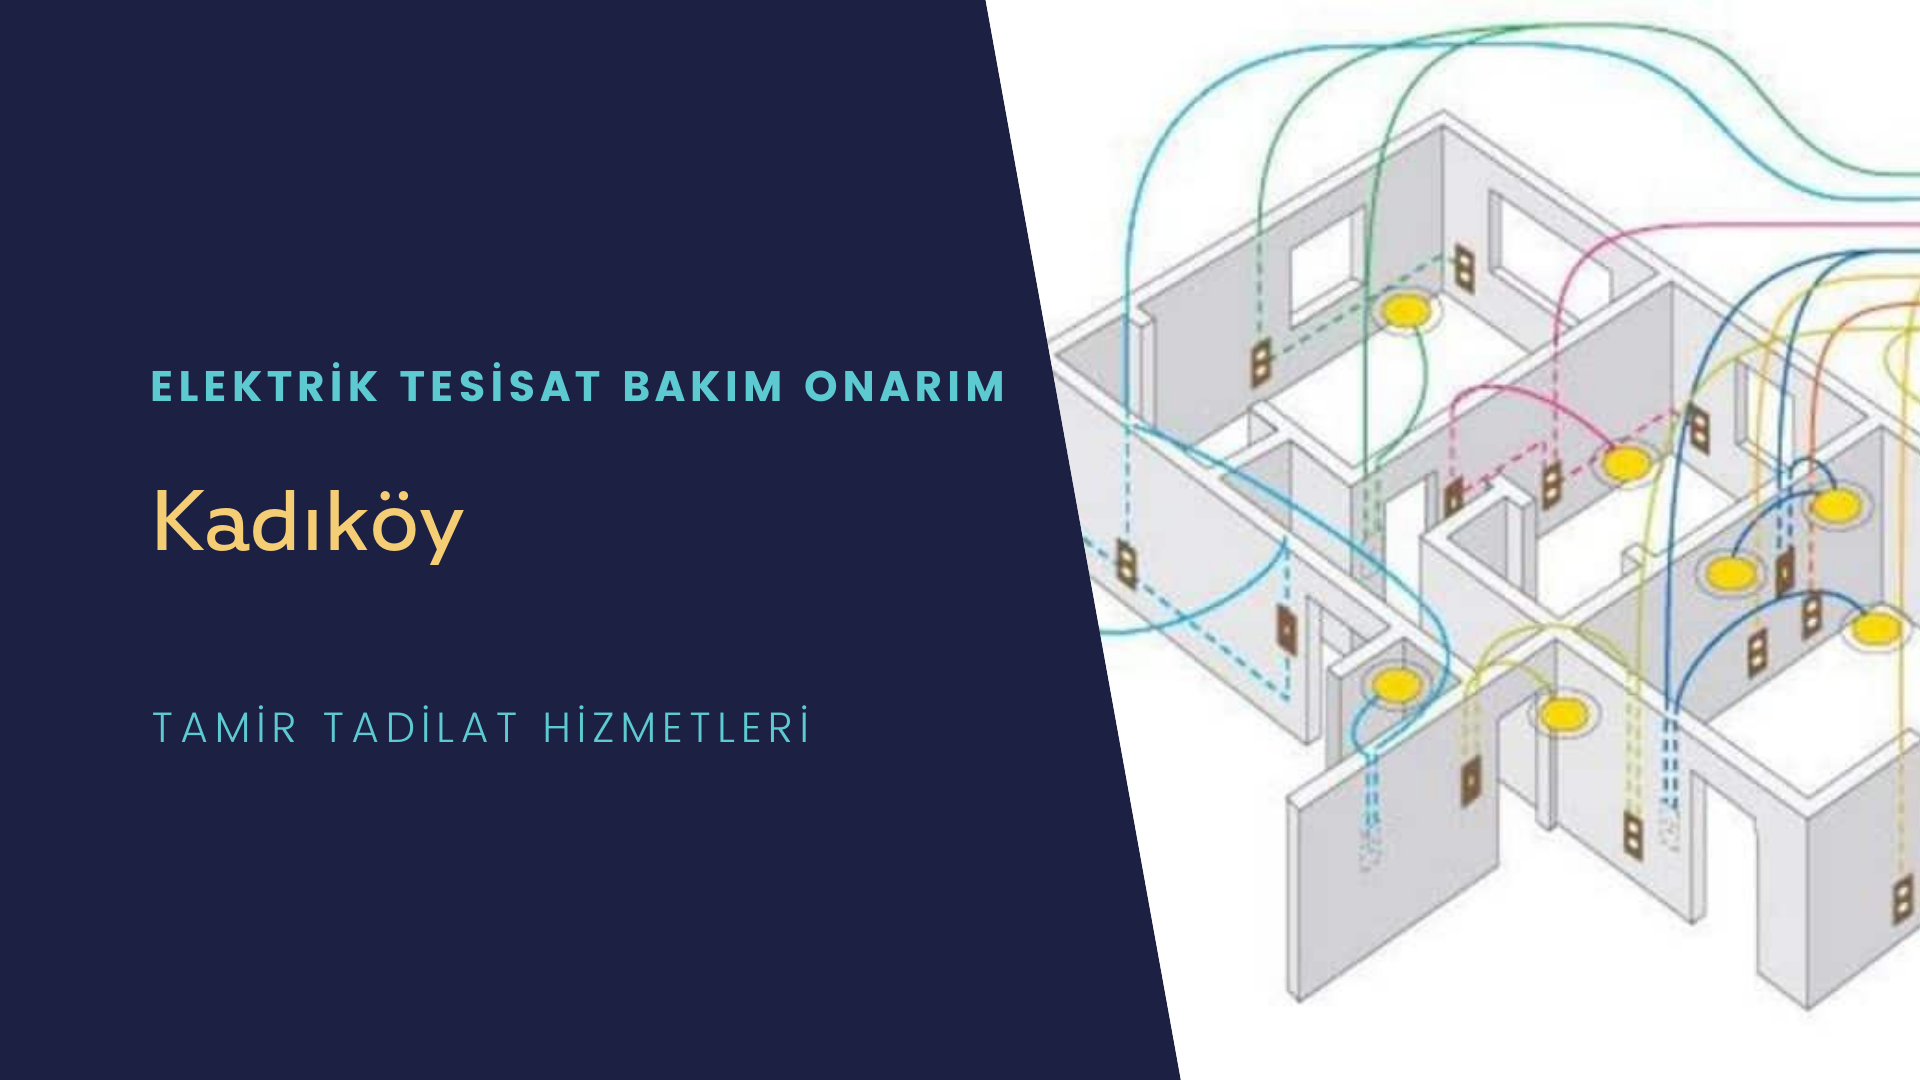 Kadıköy'de elektrik tesisatı ustalarımı arıyorsunuz doğru adrestenizi Kadıköy elektrik tesisatı ustalarımız 7/24 sizlere hizmet vermekten mutluluk duyar.